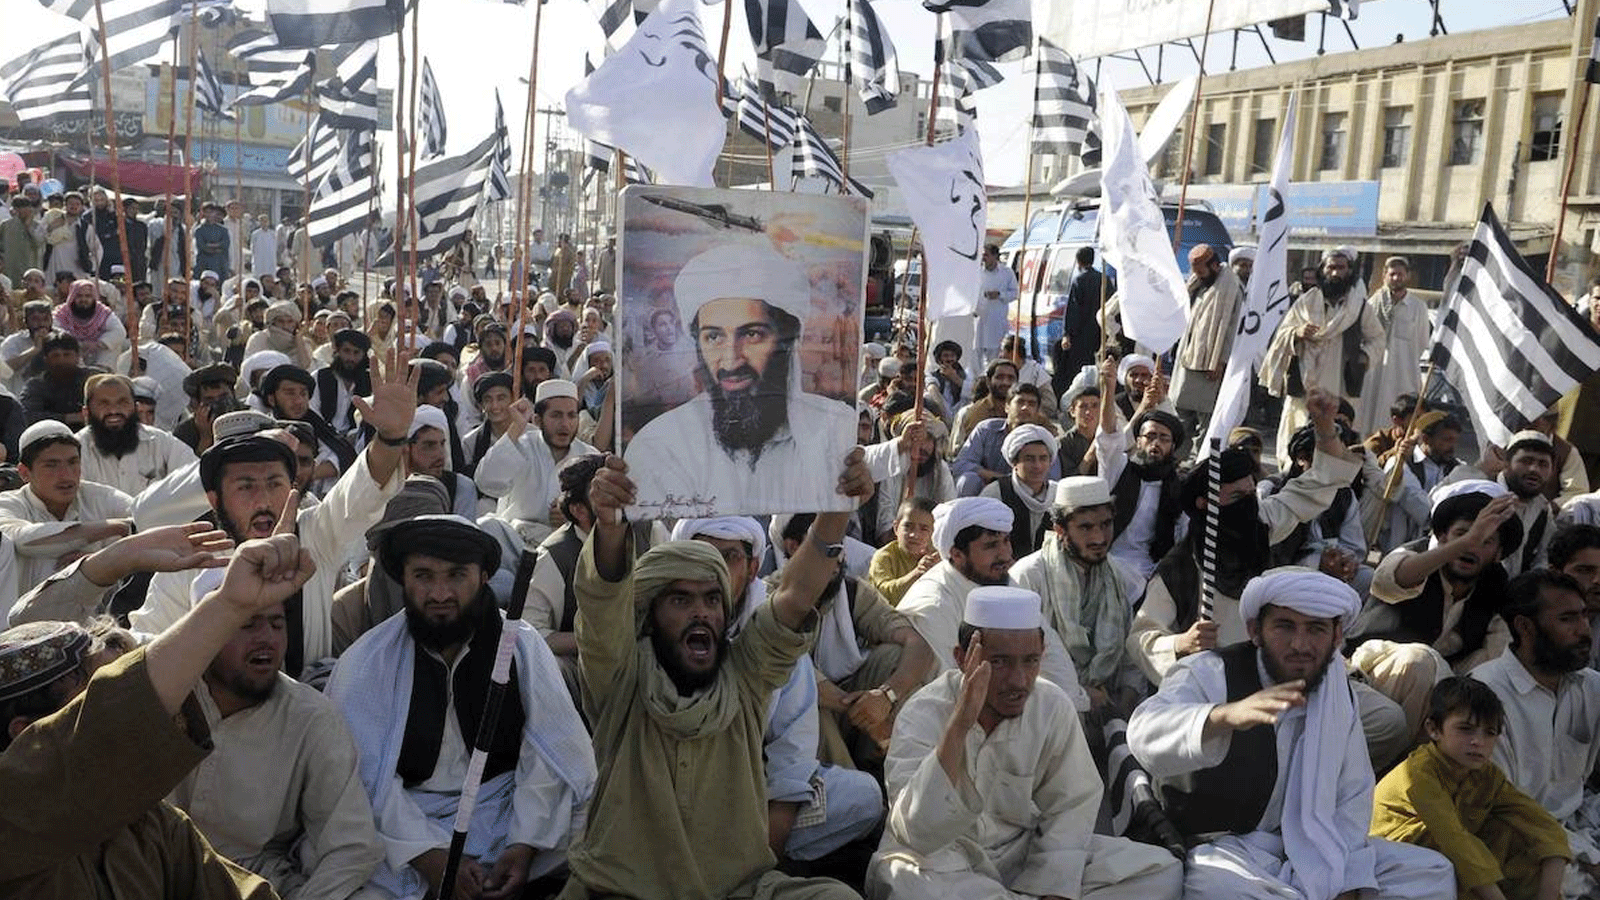 أنصار حزب جمعية علماء الإسلام المتشدد الموالي لطالبان (JUI-N) يرددون شعارات مناهضة للولايات المتحدة خلال مظاهرة في كويتا (باكستان) في 2 أيار/مايو 2011 بعد مقتل أسامة بن لادن